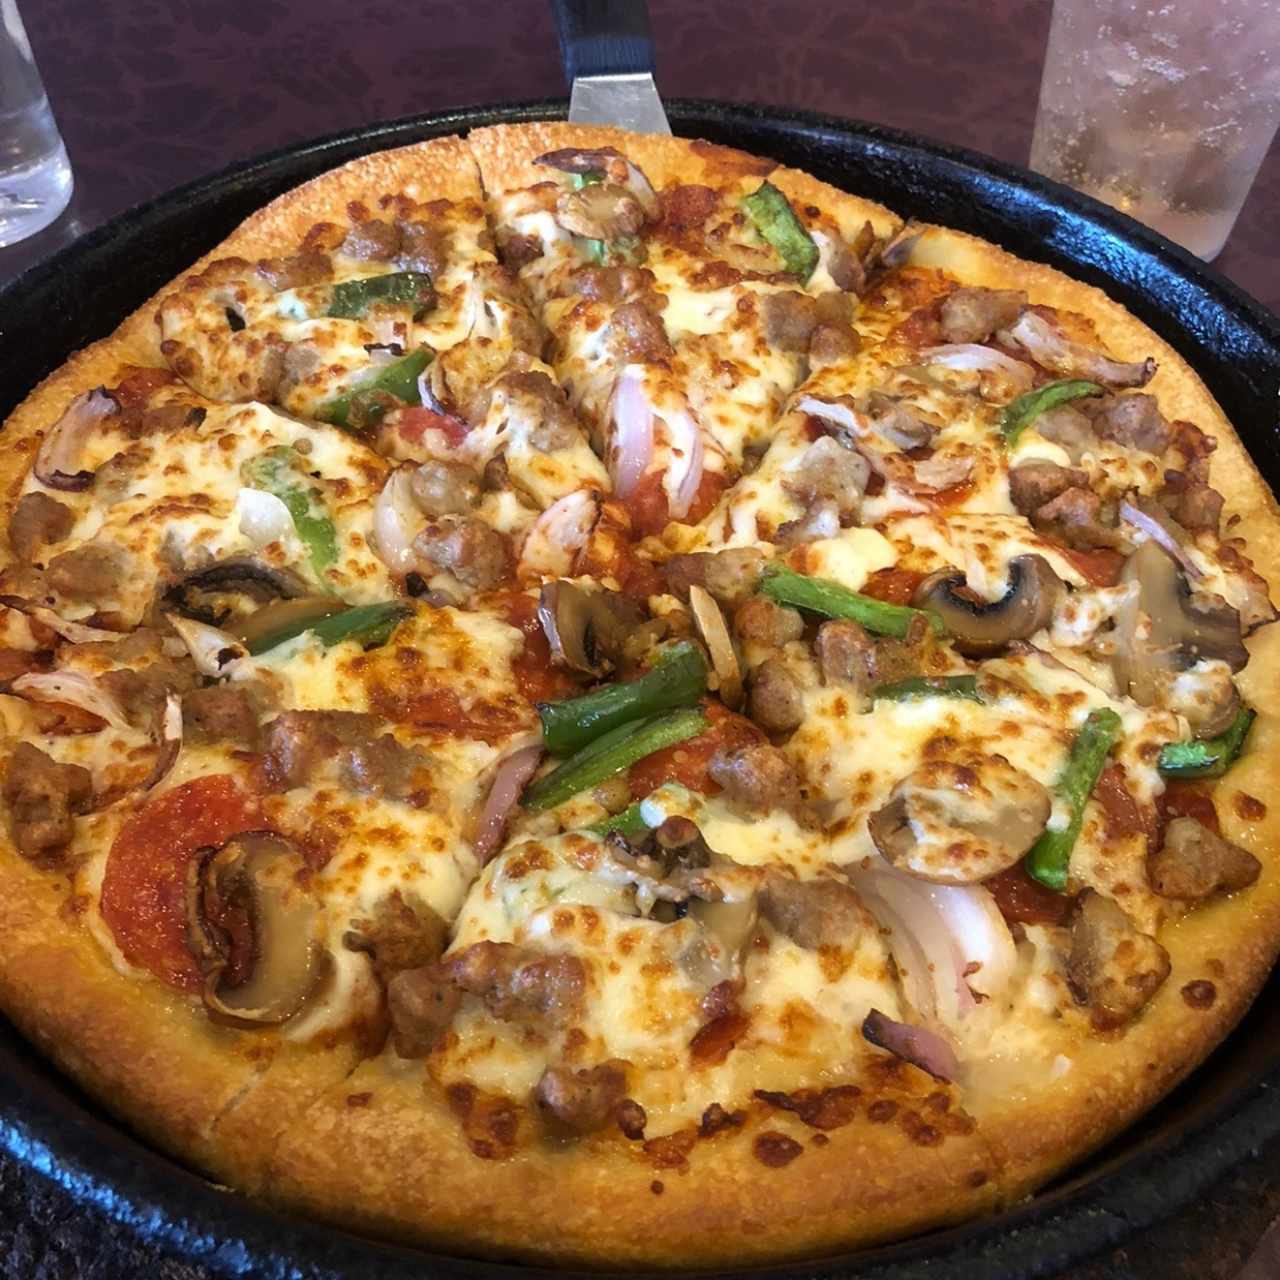 Pizzas - Suprema